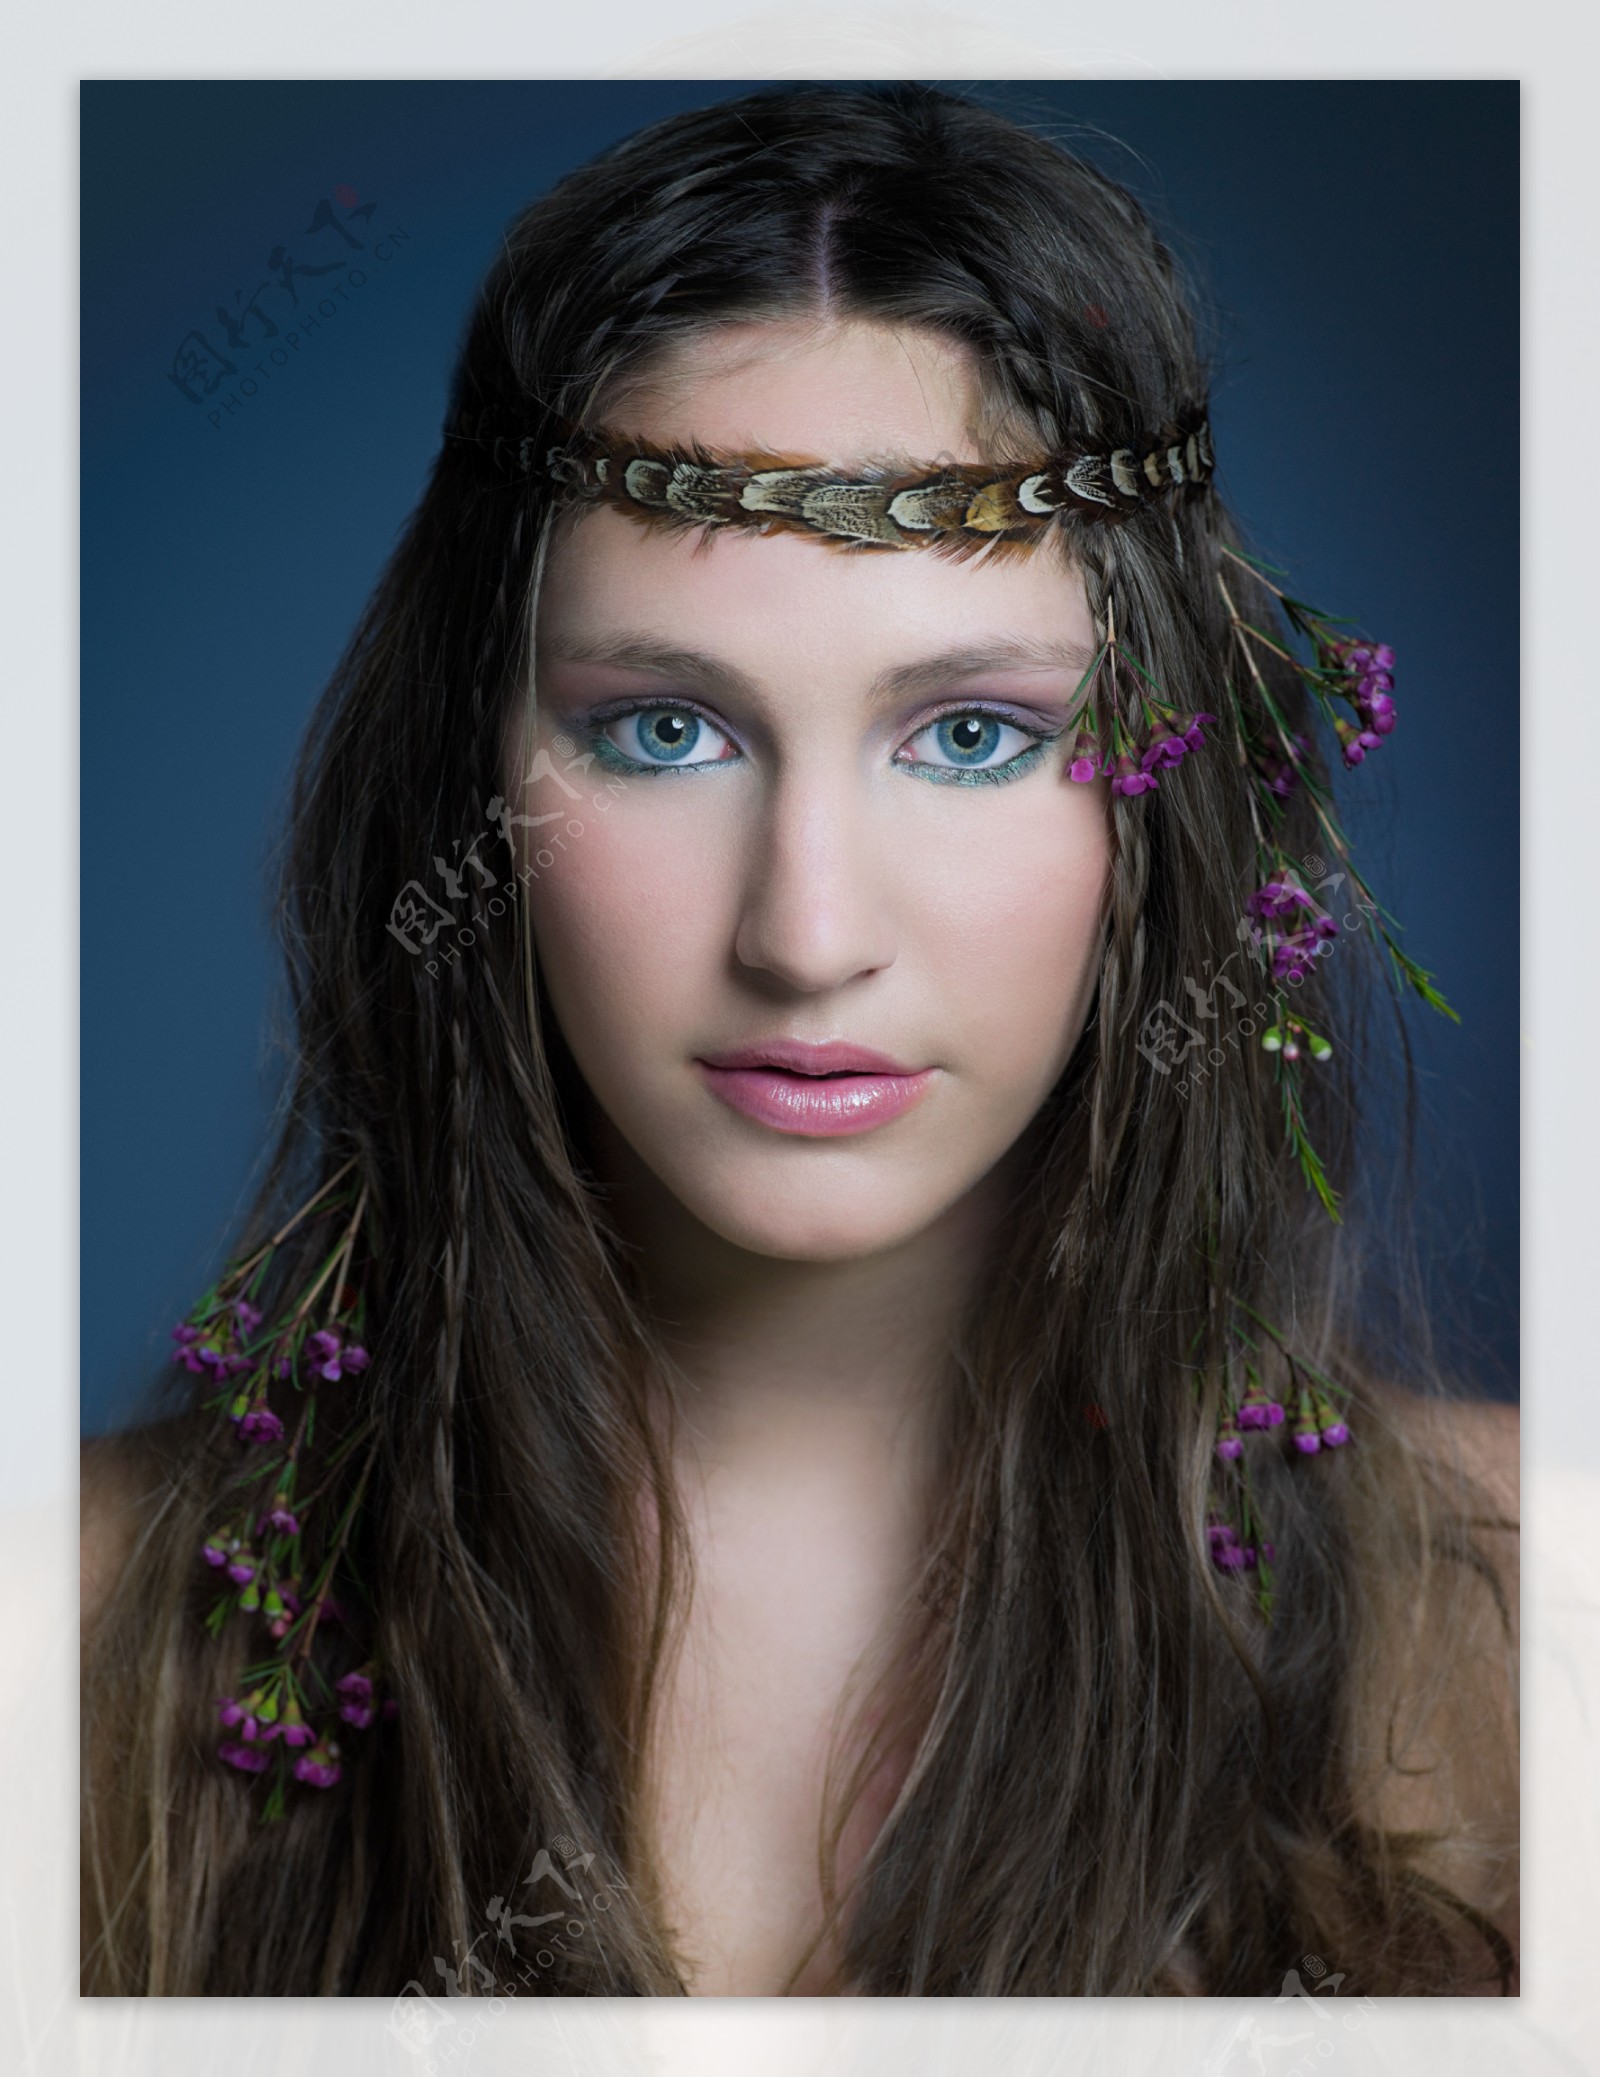 头上戴着羽毛和花朵的神秘漂亮女孩图片图片